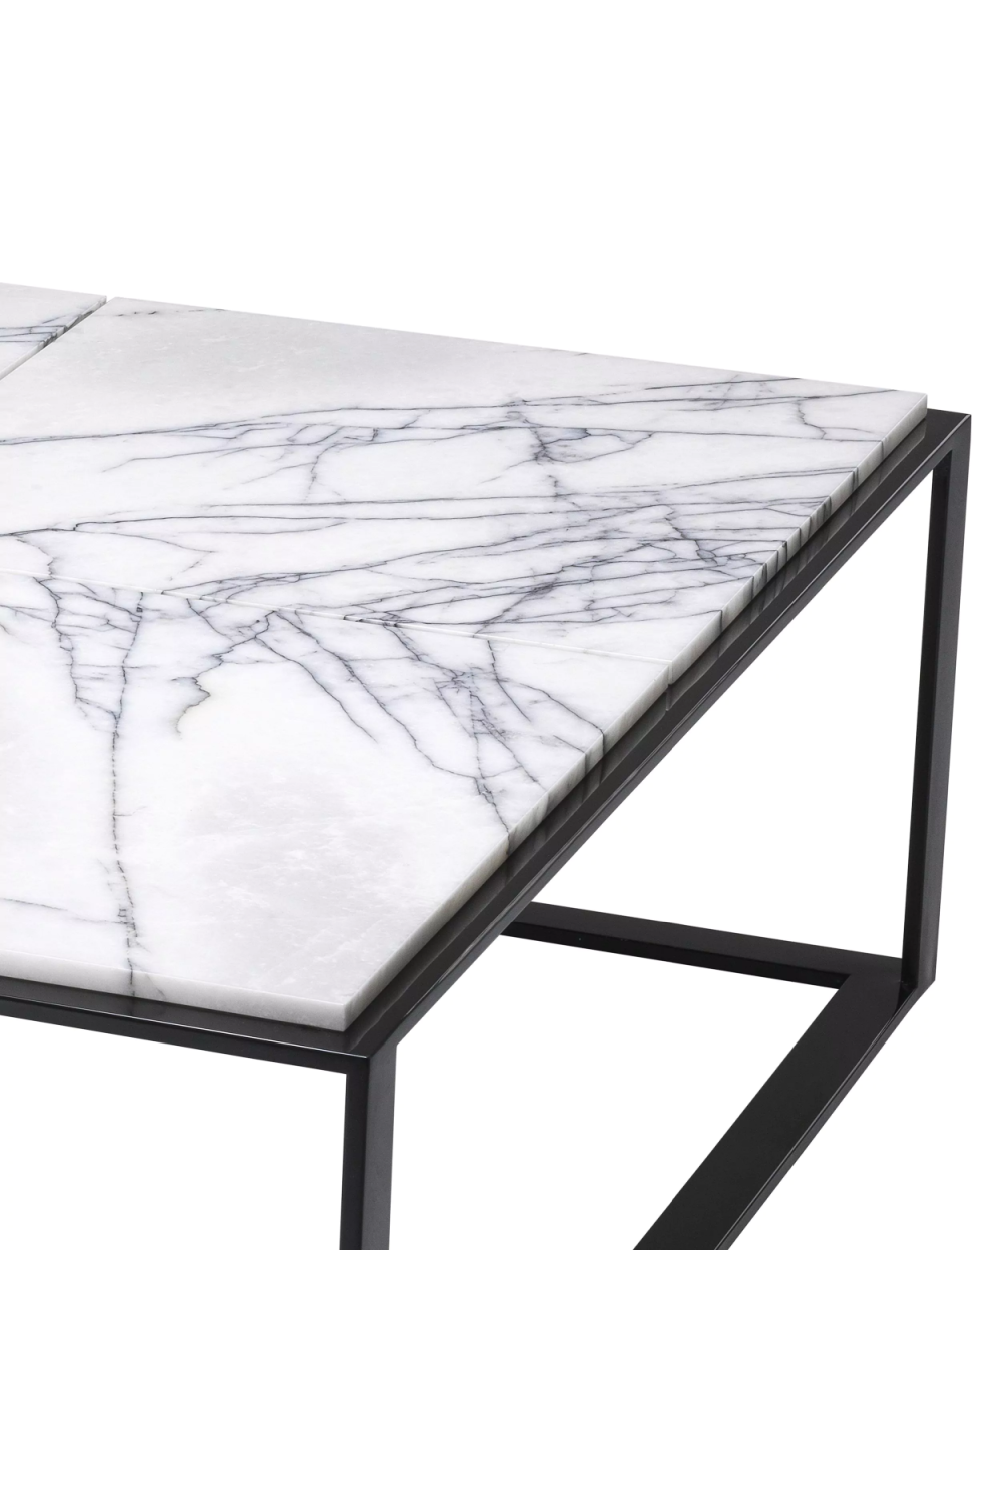 Set of 16, Adria Coffee Table - White Marble with Black Metal Leg